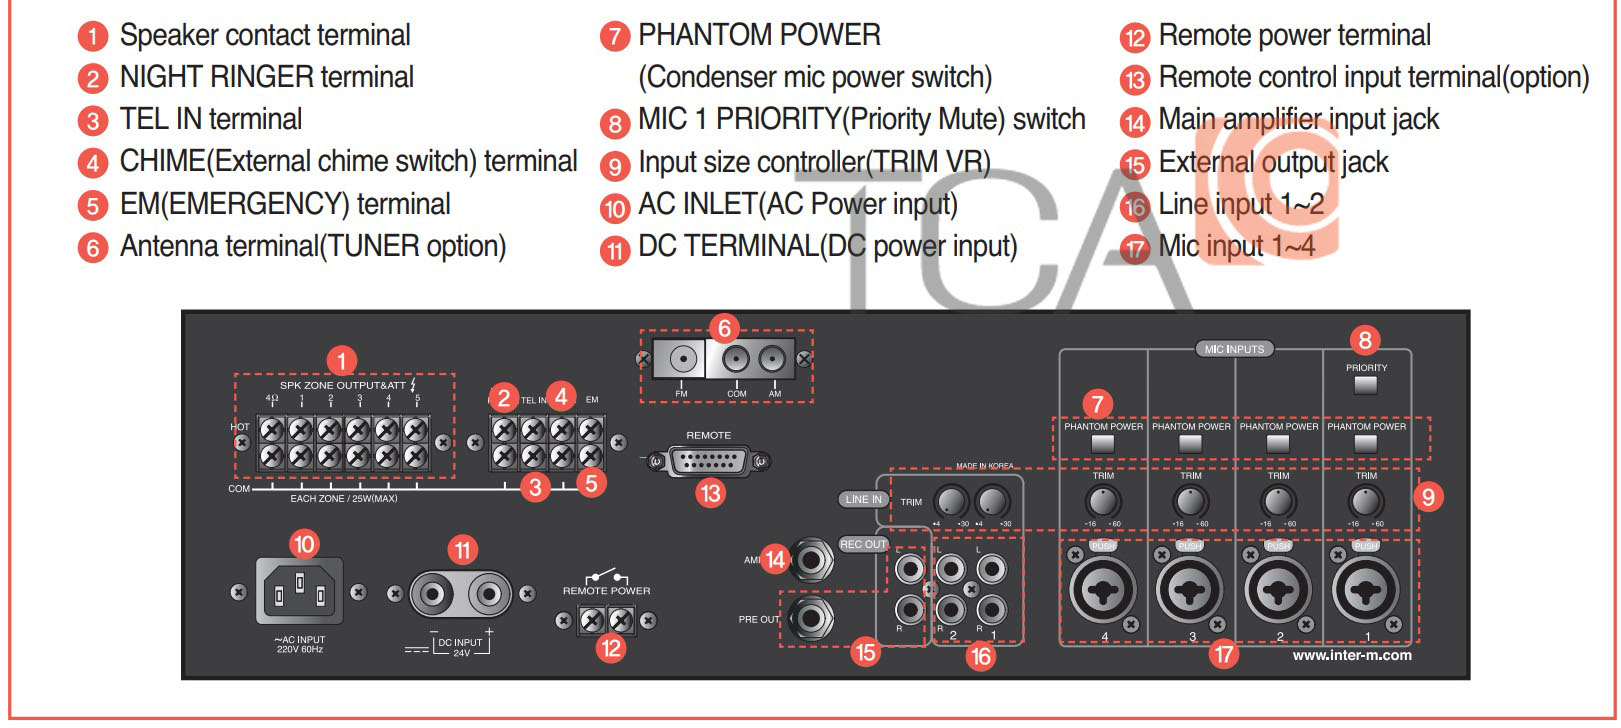 Hướng dẫn sử dụng amply mixer inter-M PAM-520